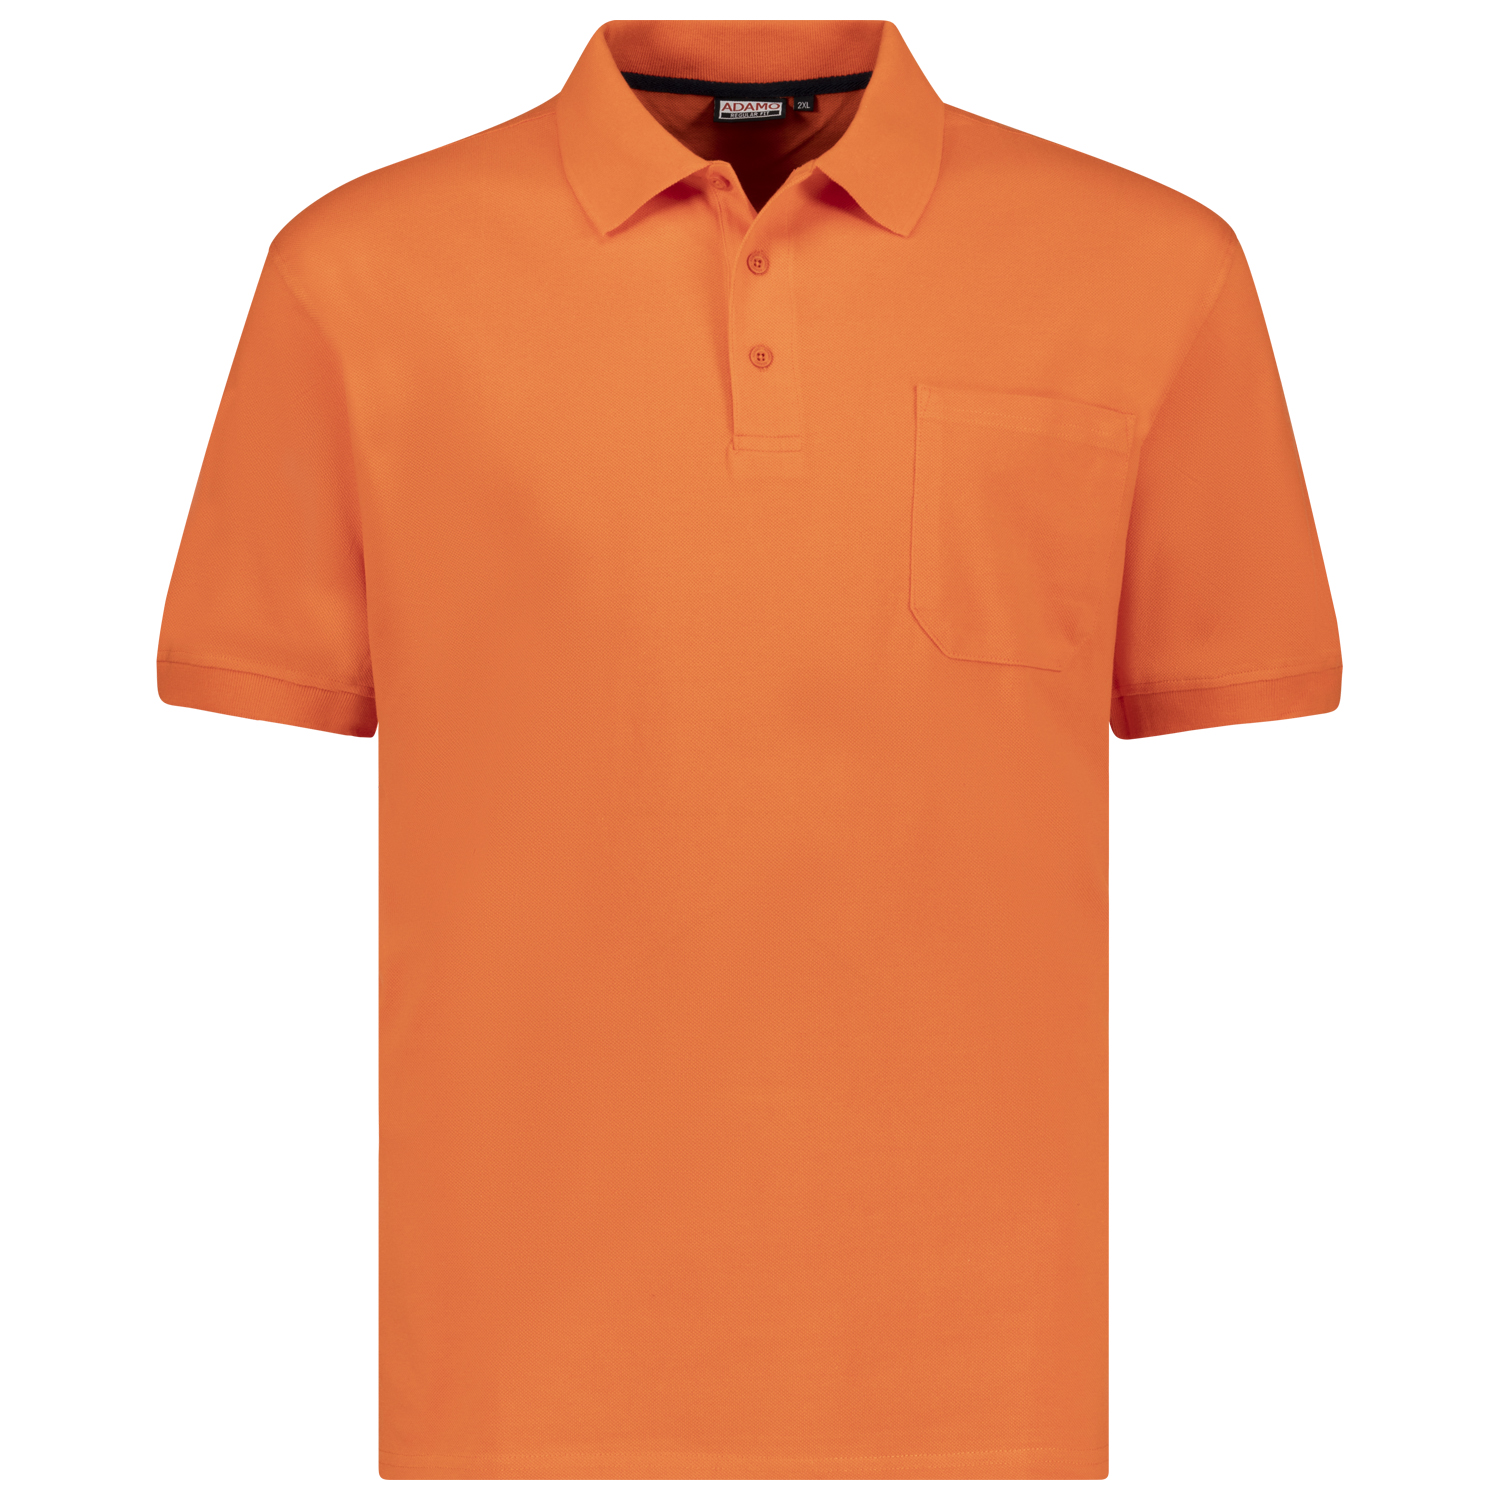 Orange farbenes kurzarm Polo Shirt KENO von ADAMO in Pique Qualität für Herren in großen Größen bis 10XL